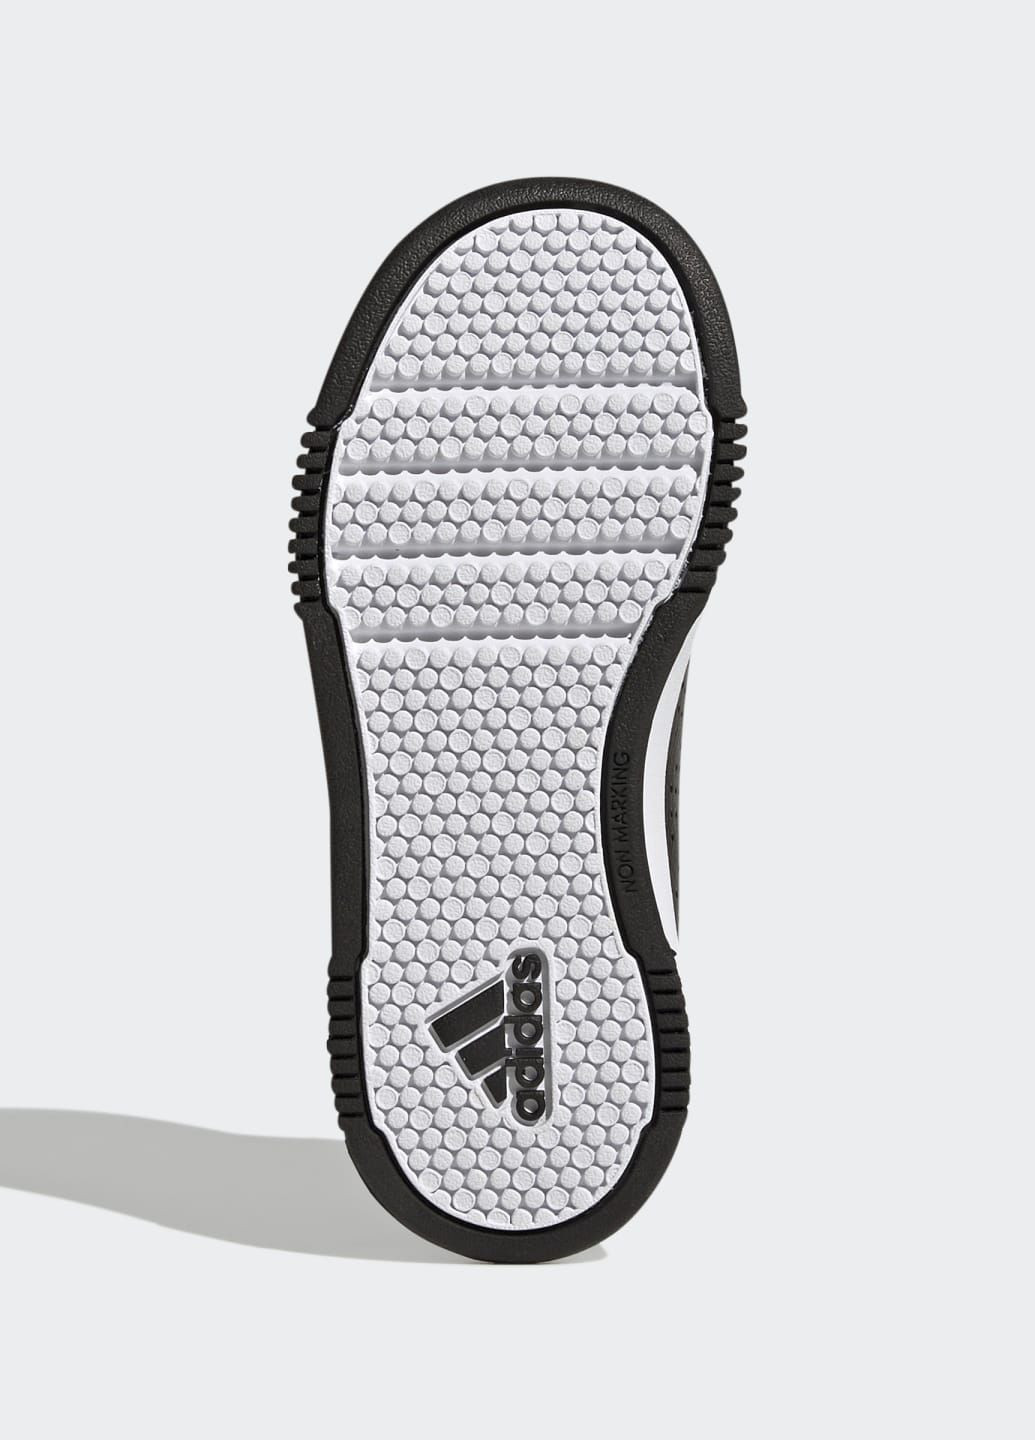 Черные всесезонные кроссовки tensaur sport adidas